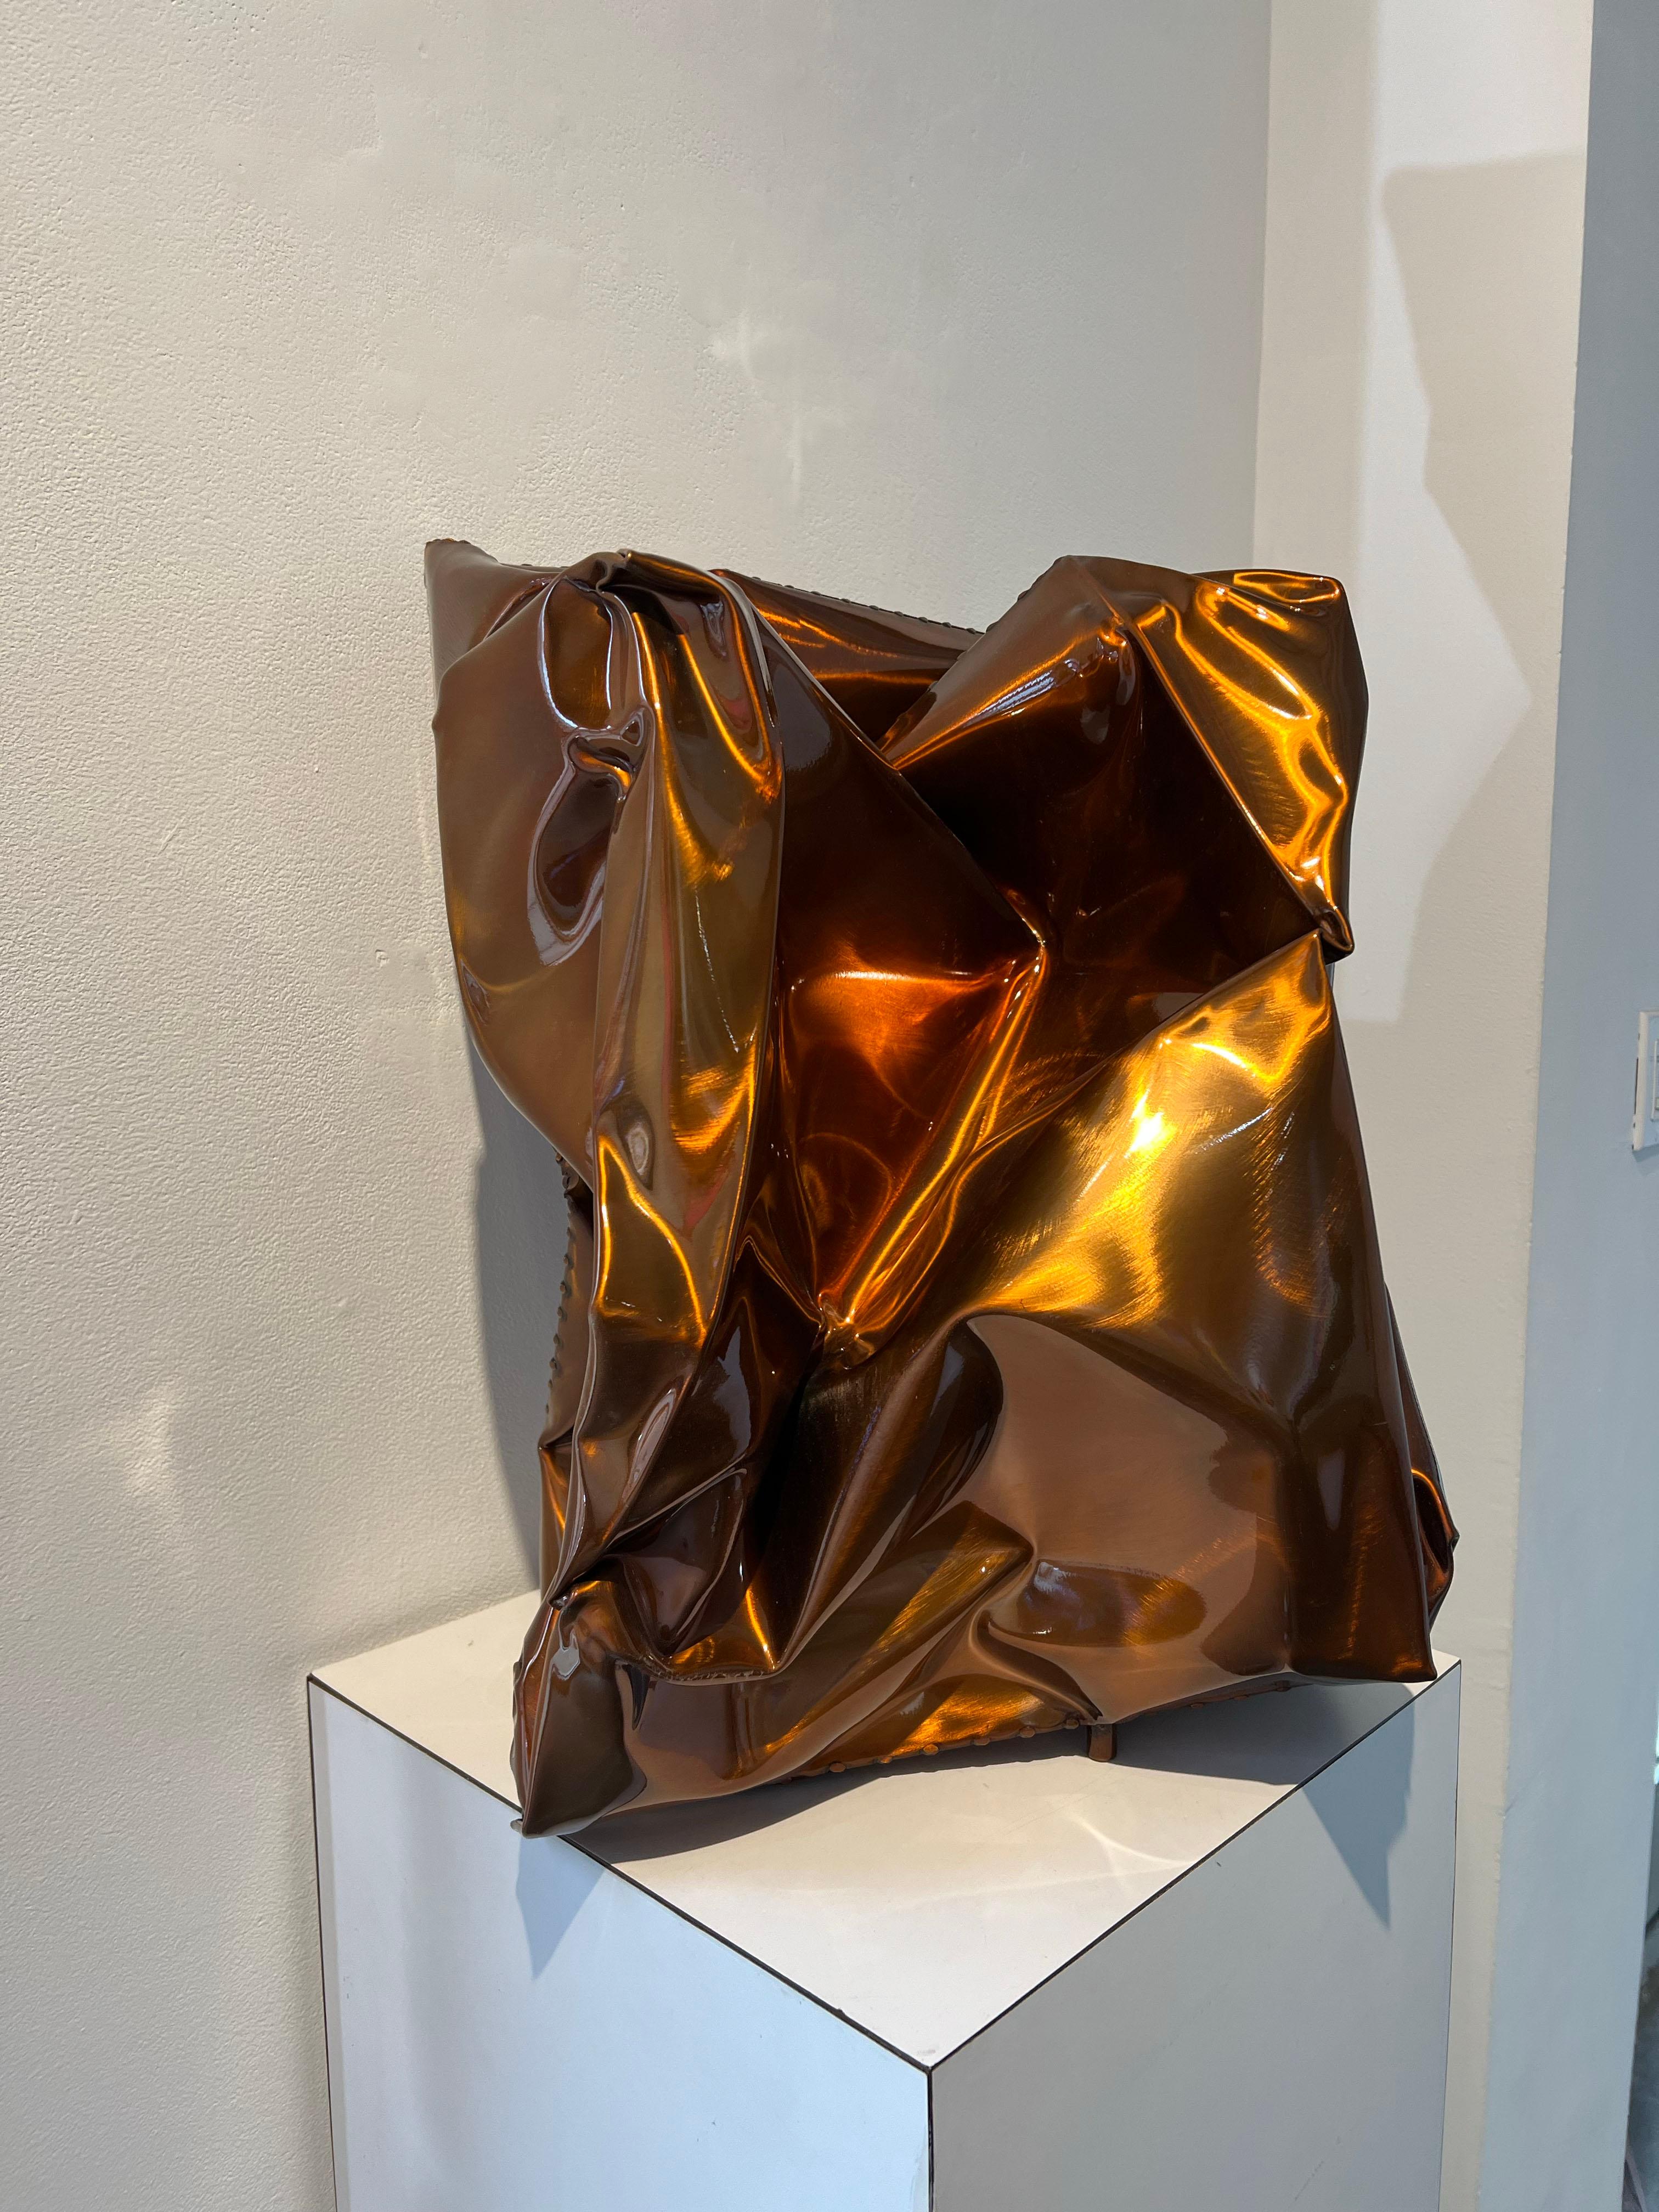 Kastanienholz (Beige), Abstract Sculpture, von Rick Lazes